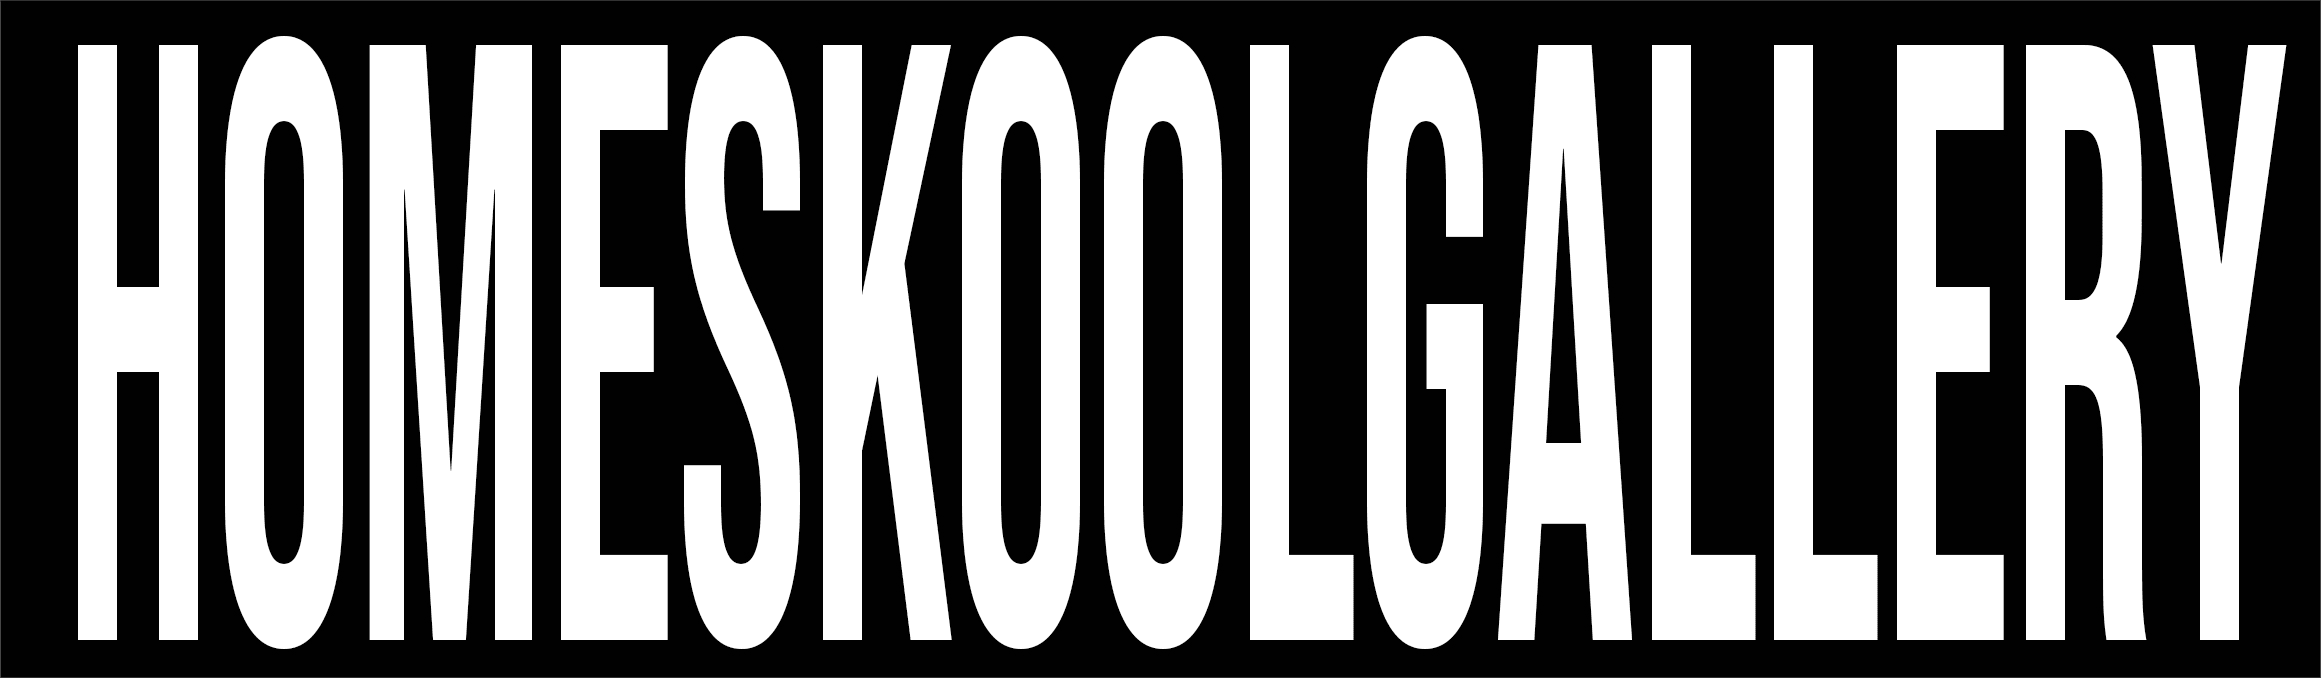 HomeskoolGallery bannière